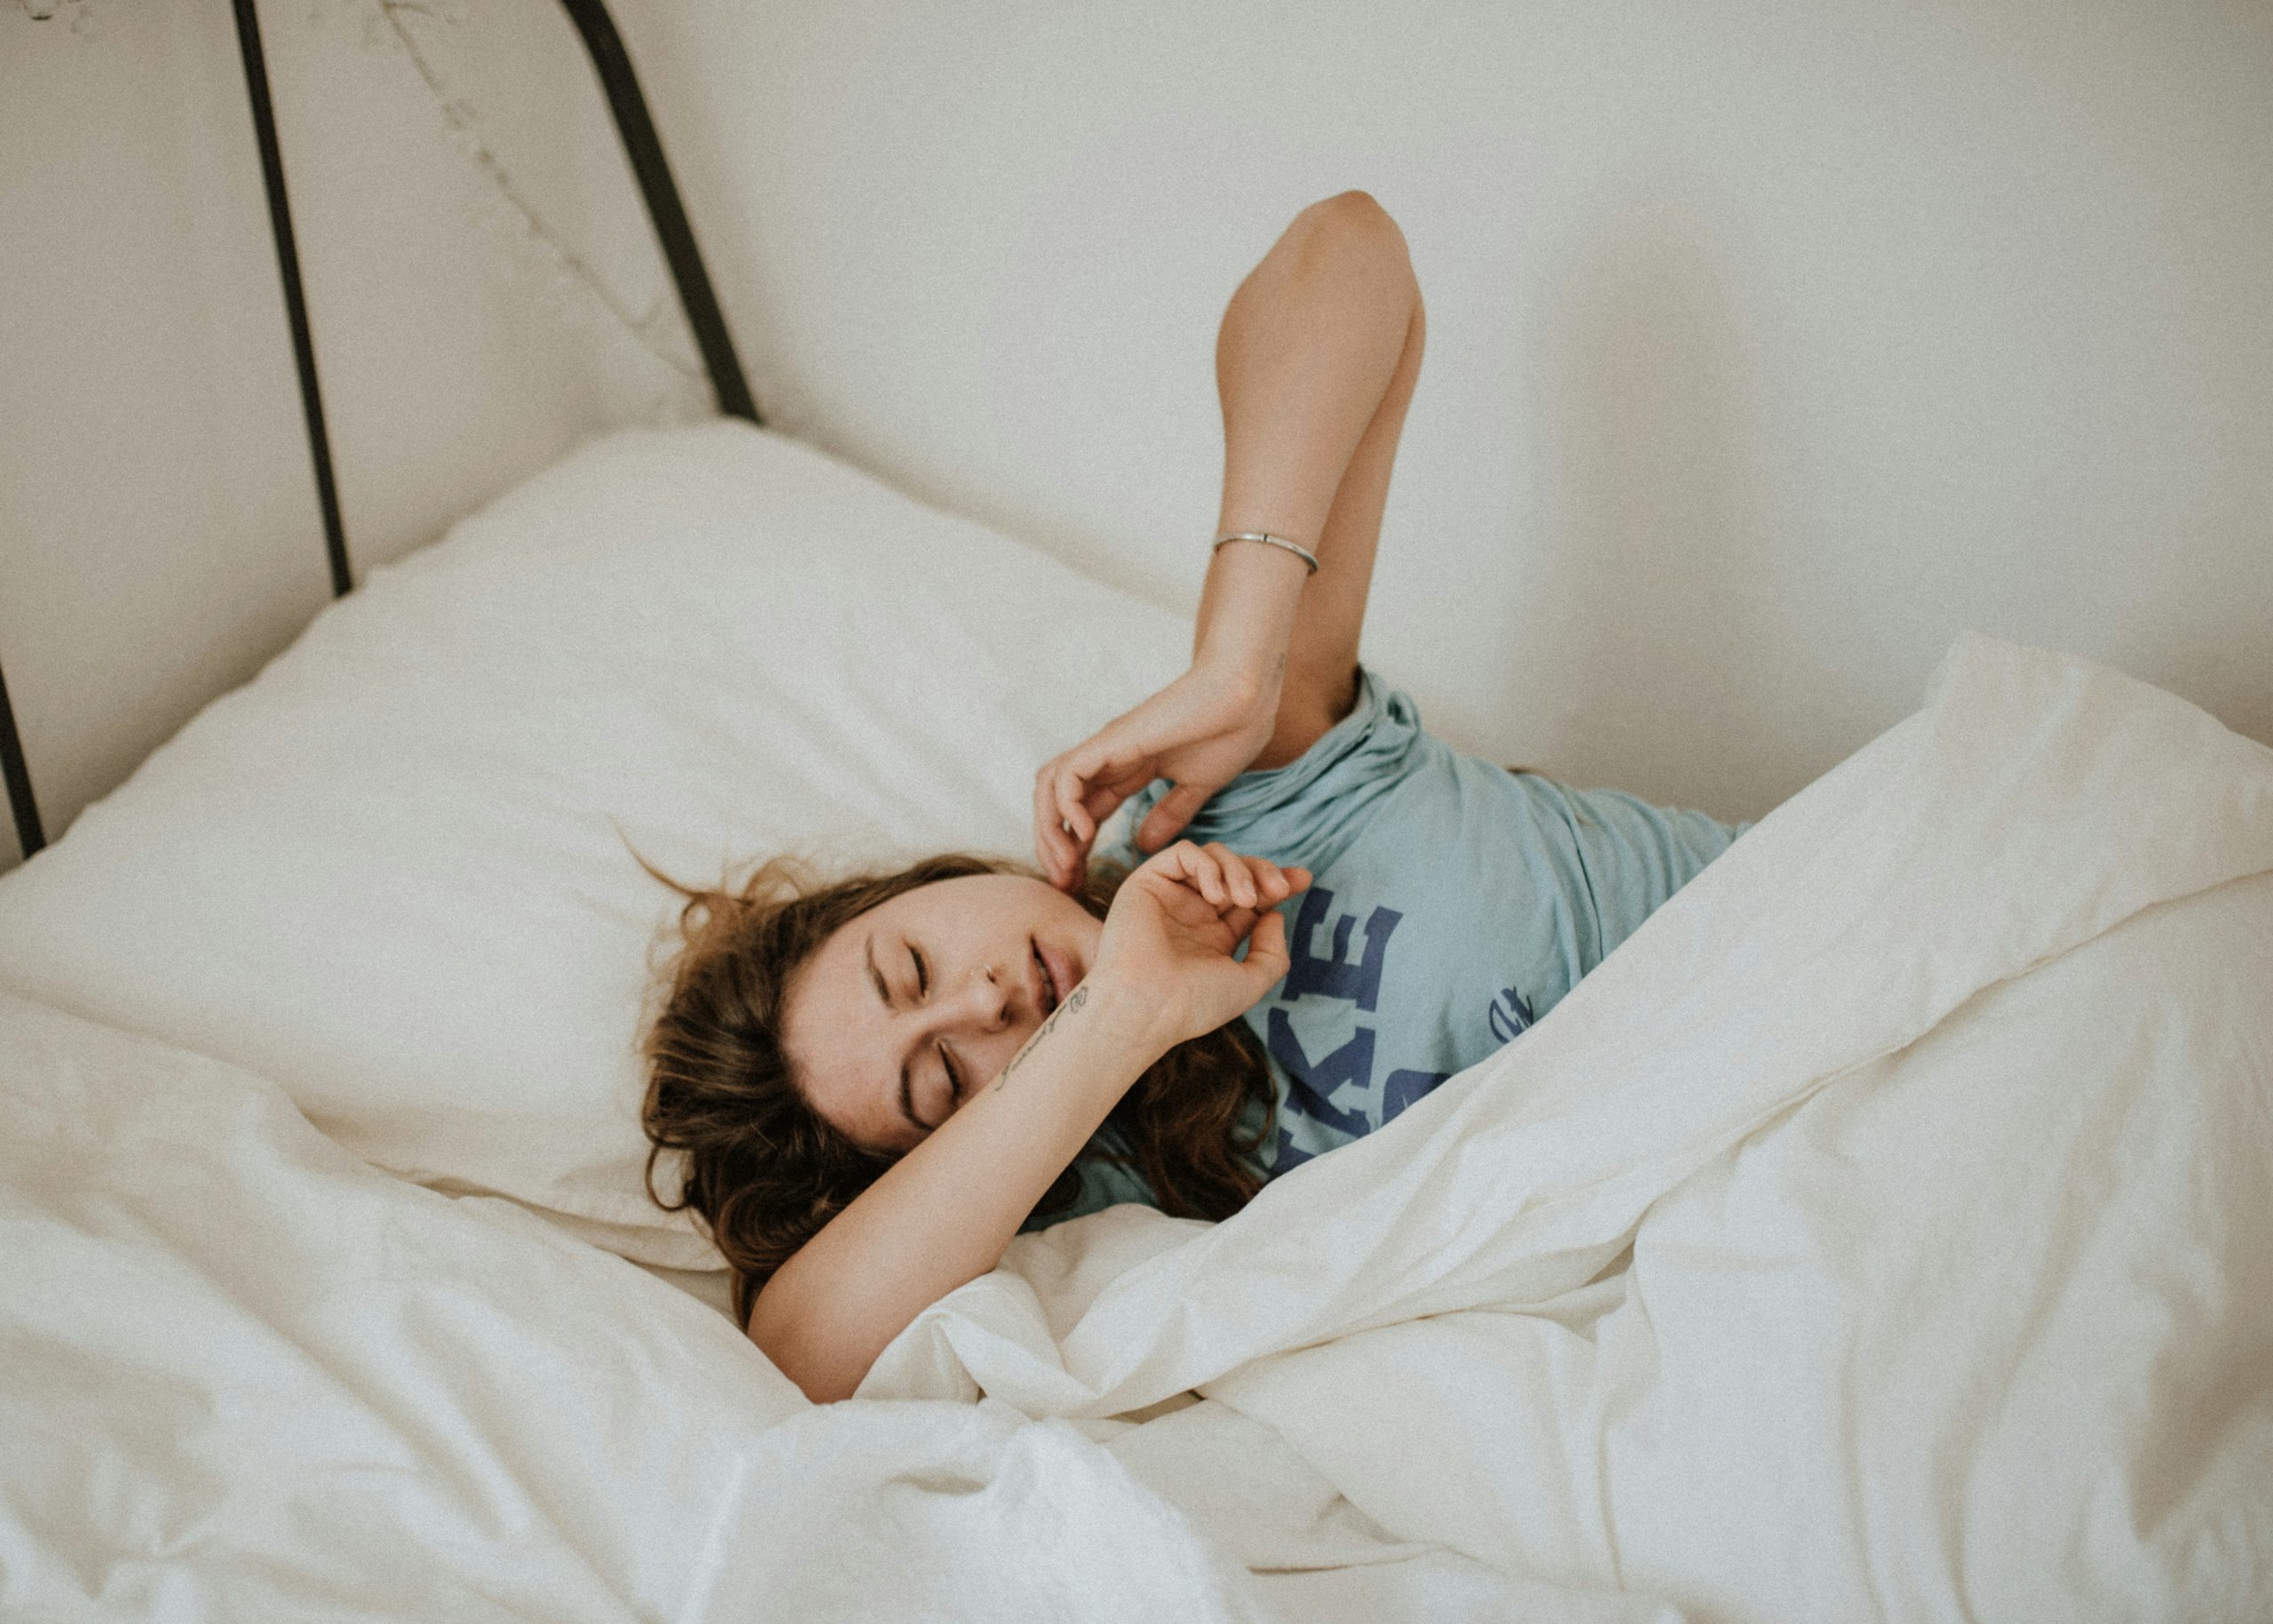 Πώς η διατροφή μπορεί να προκαλέσει επικίνδυνα προβλήματα στον ύπνο, σύμφωνα με νέα μελέτη